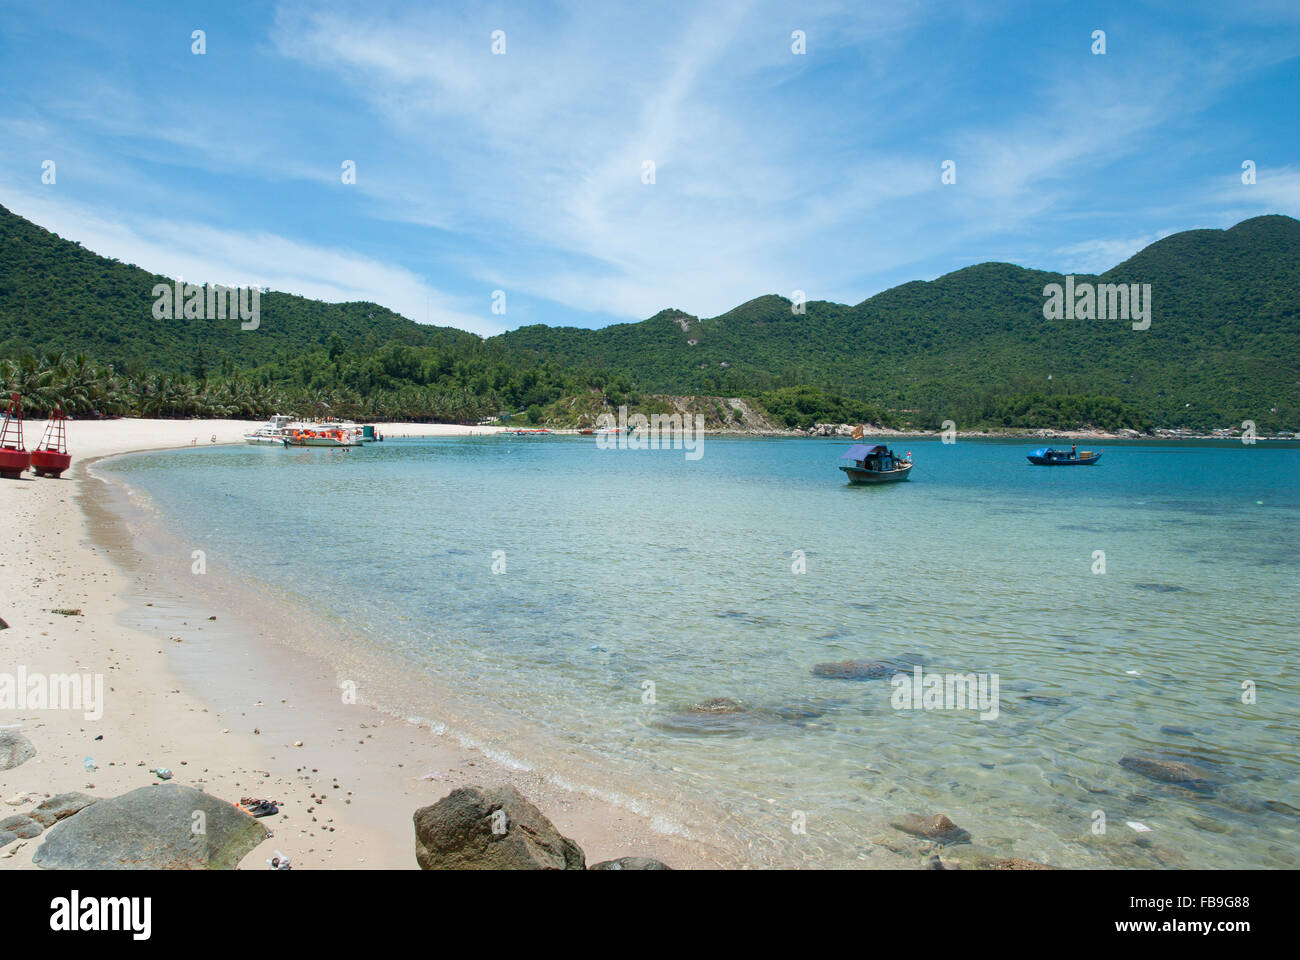 Ensoleillé et chaud tropical beach. Baie de Cham îles près de Hoi An Hoi An() et Da Nang() Danang, Vietnam central. Banque D'Images